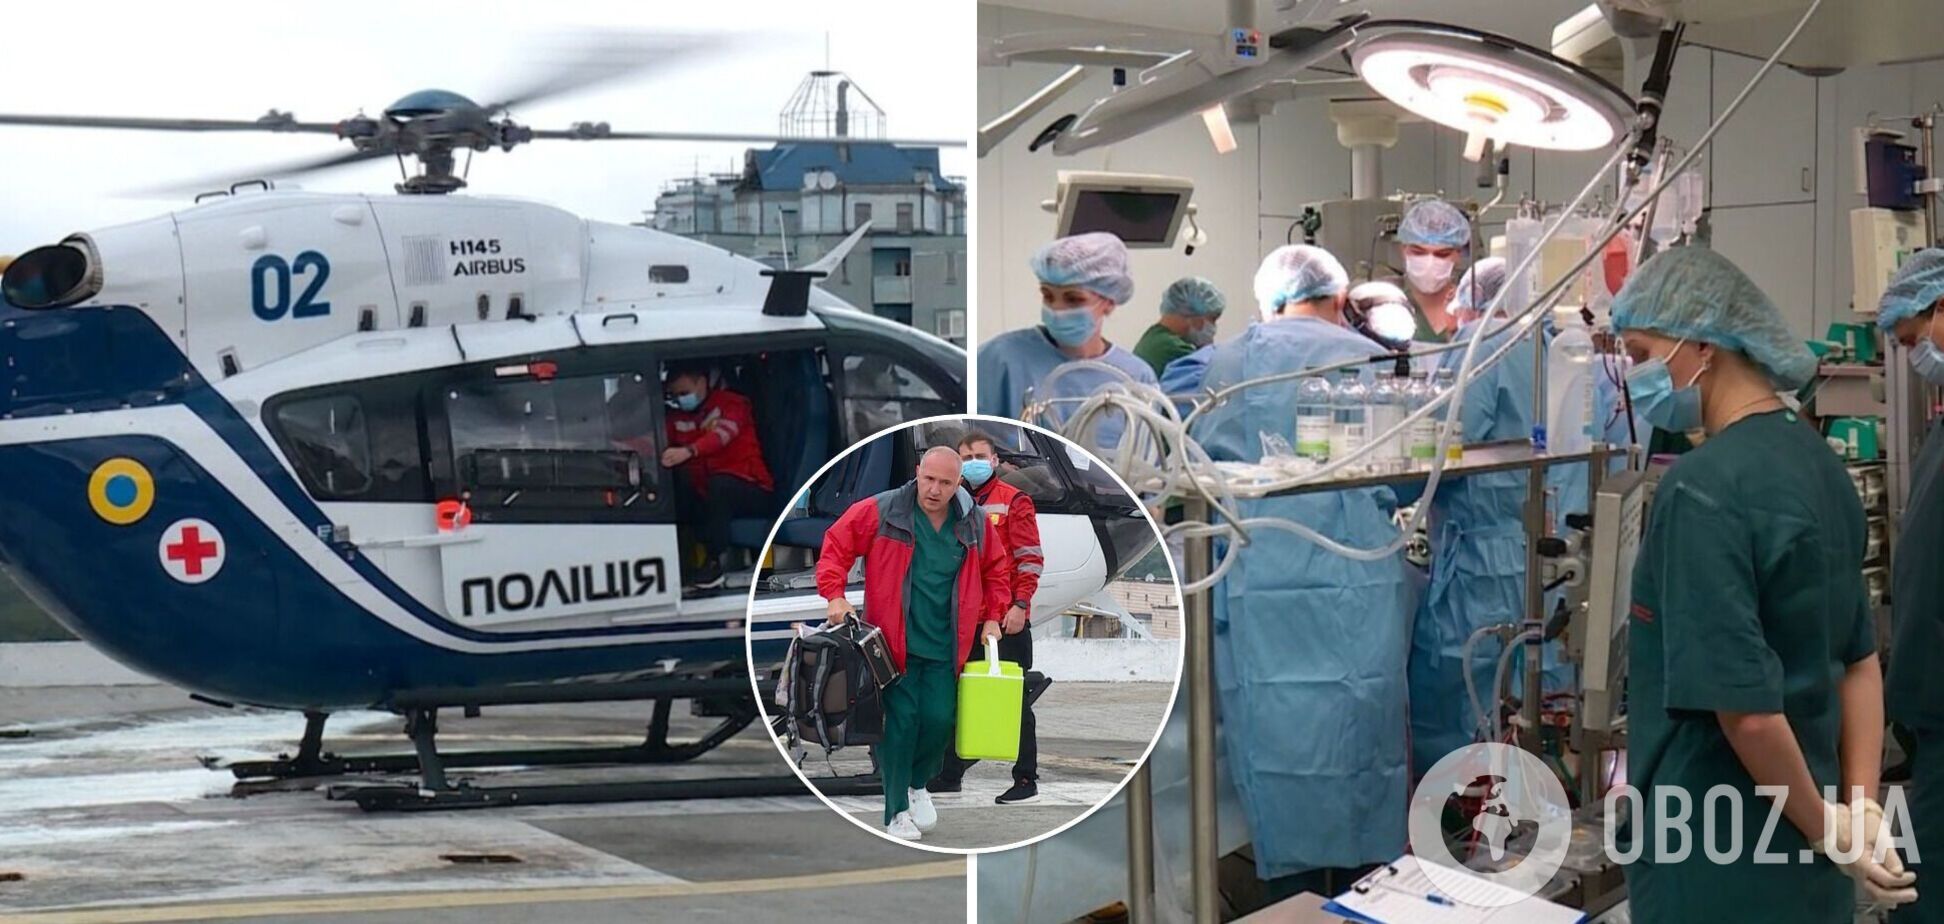 Українські поліцейські допомогли врятувати життя чотирьом пацієнтам, доставивши донорські органи для пересадки. Відео